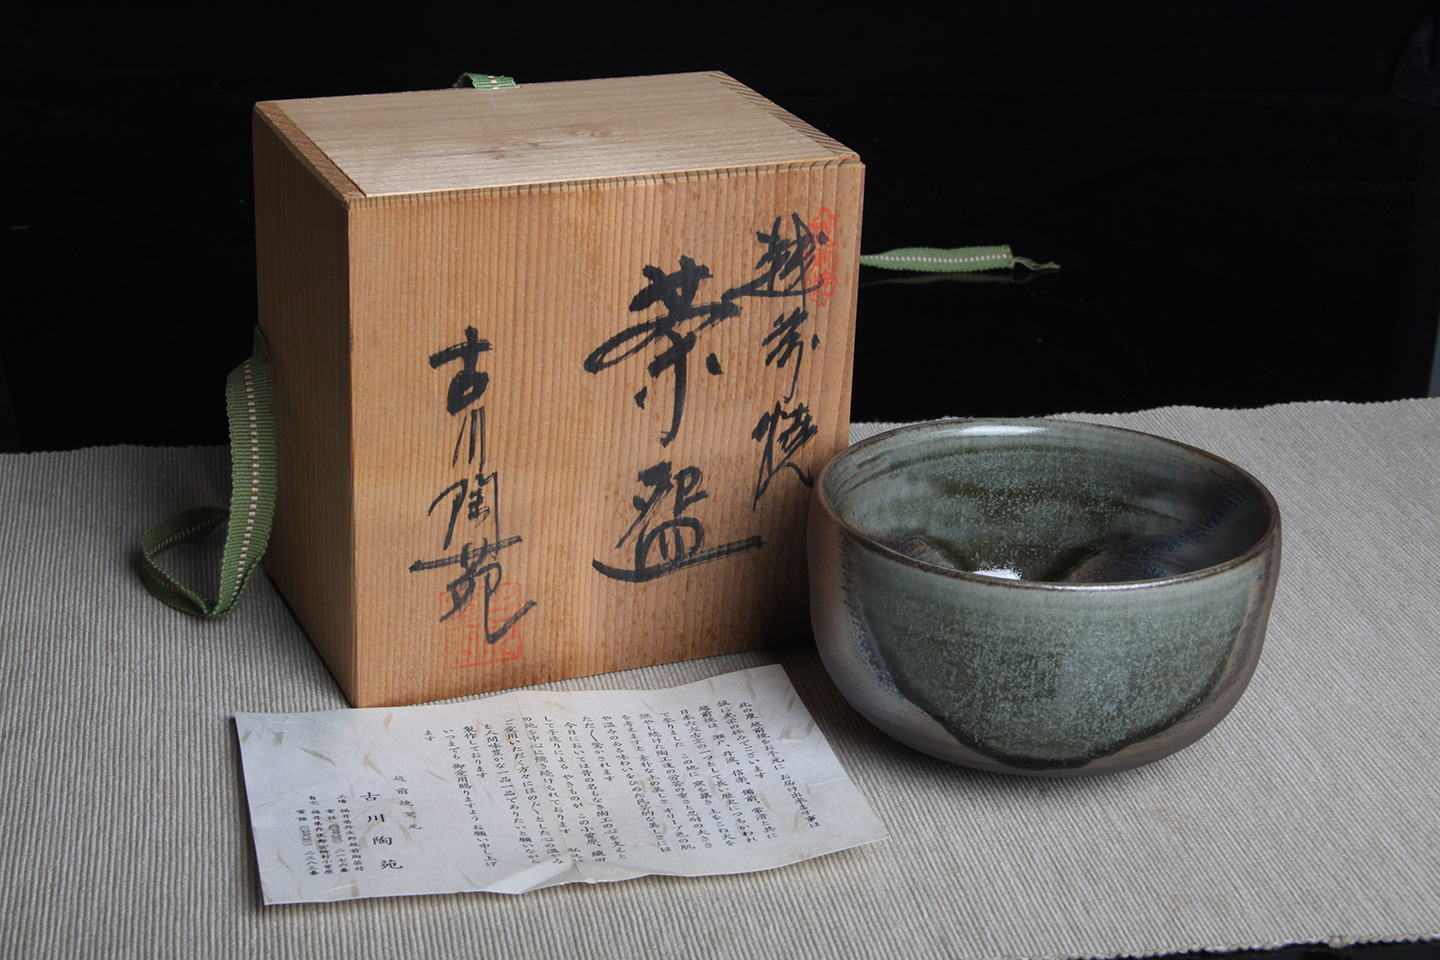 日本茶碗越前烧古川陶宛作小草纹莹润陶绿色灰胎内耀色闪亮日本老茶碗带 